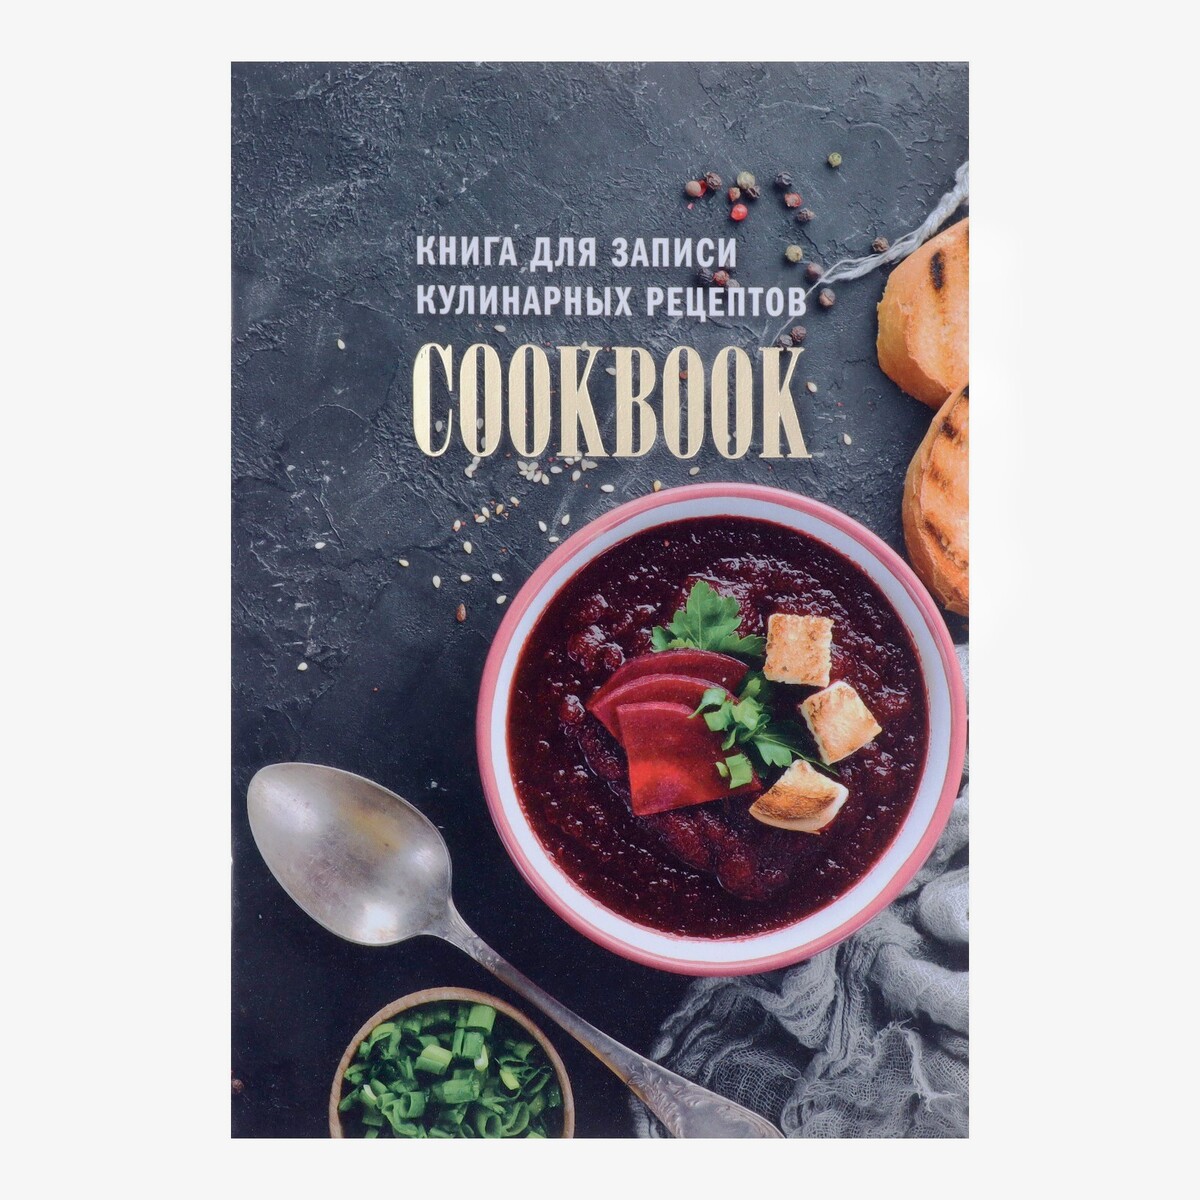 Книга для записи кулинарных рецептов а5, 48 листов arduino большая книга рецептов